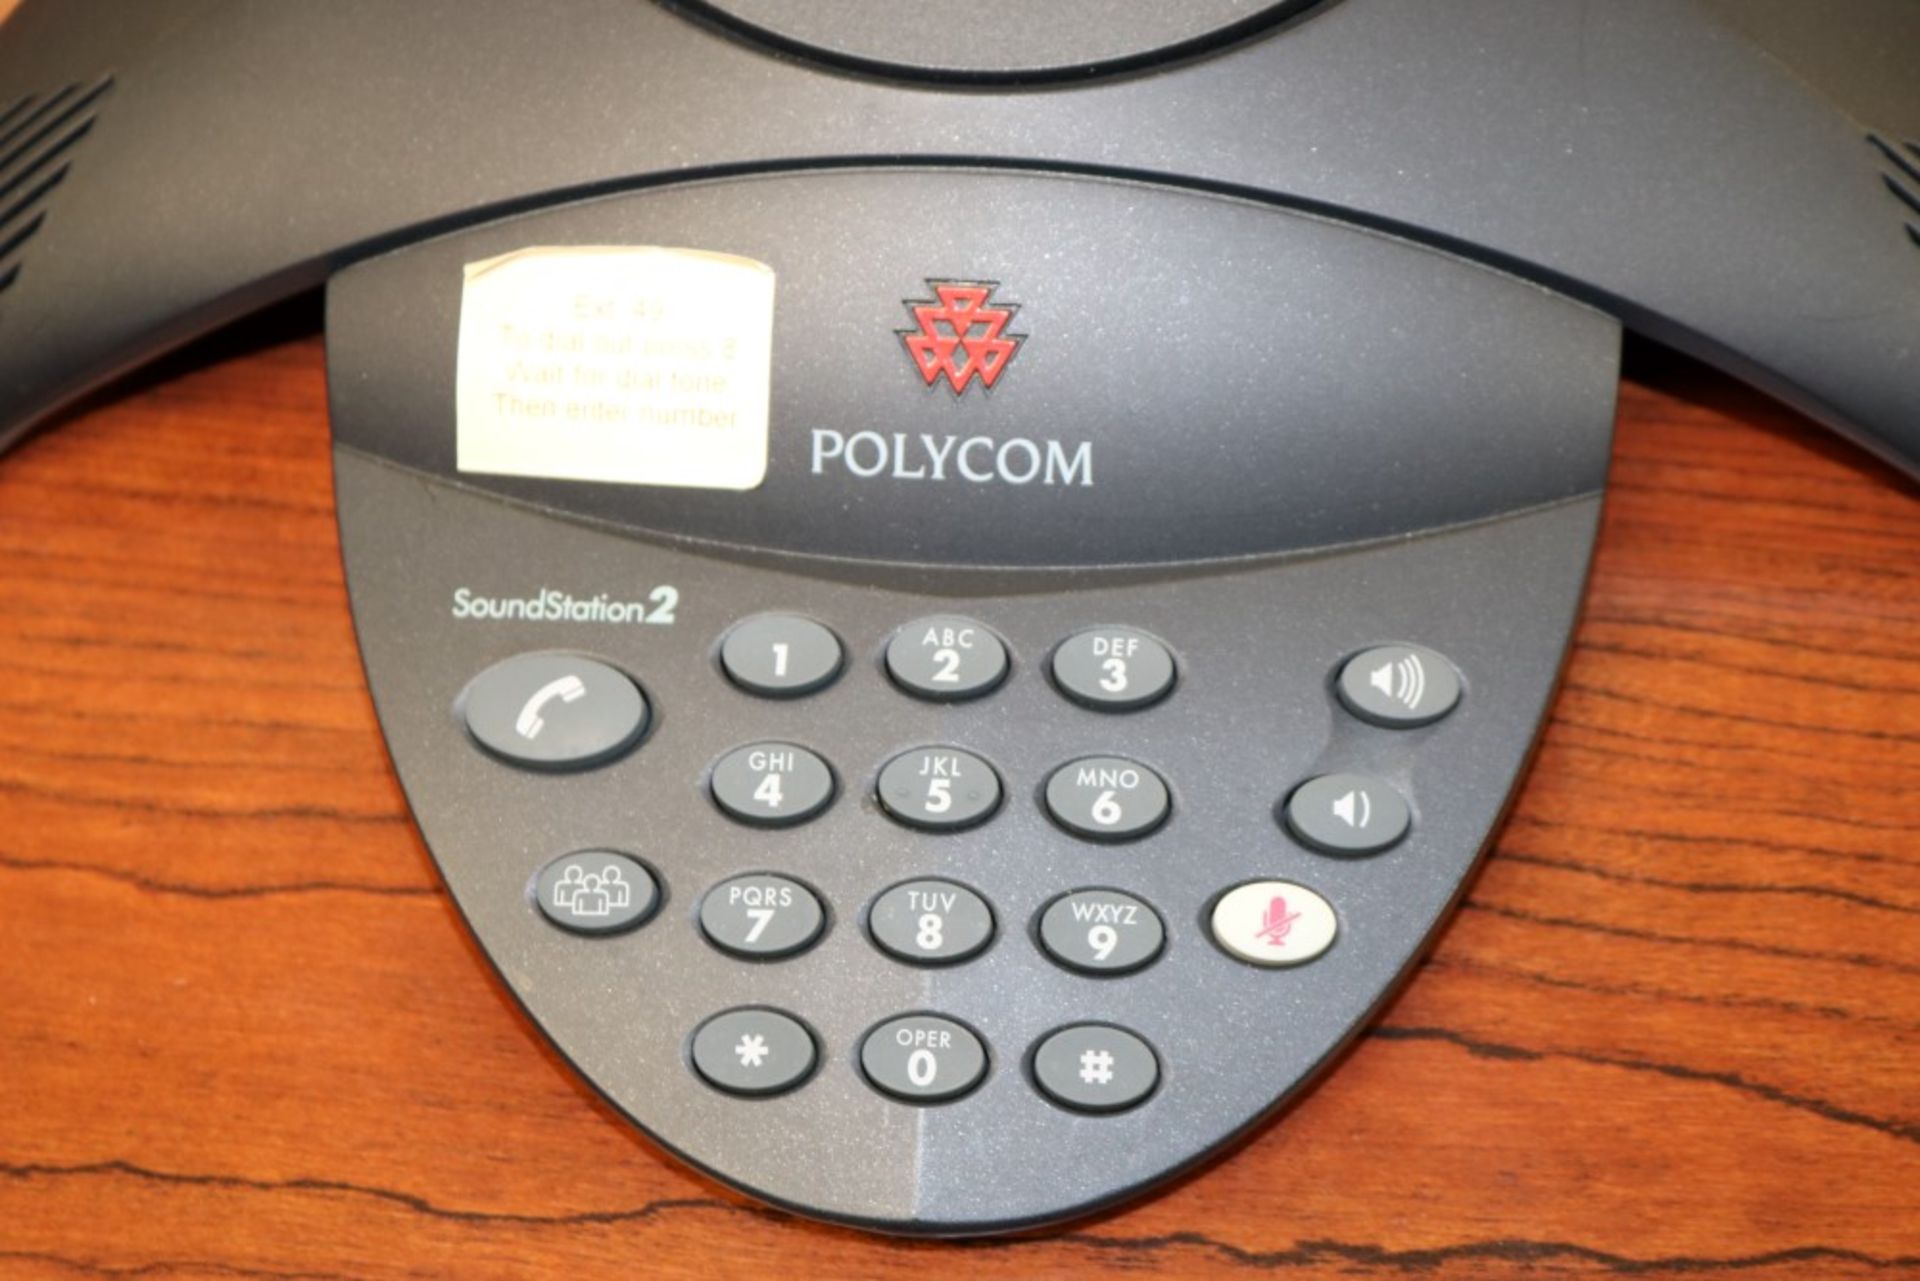 Polycom Soundstation 2, 2008 Vintage, Conference Speaker Phone - Image 2 of 5